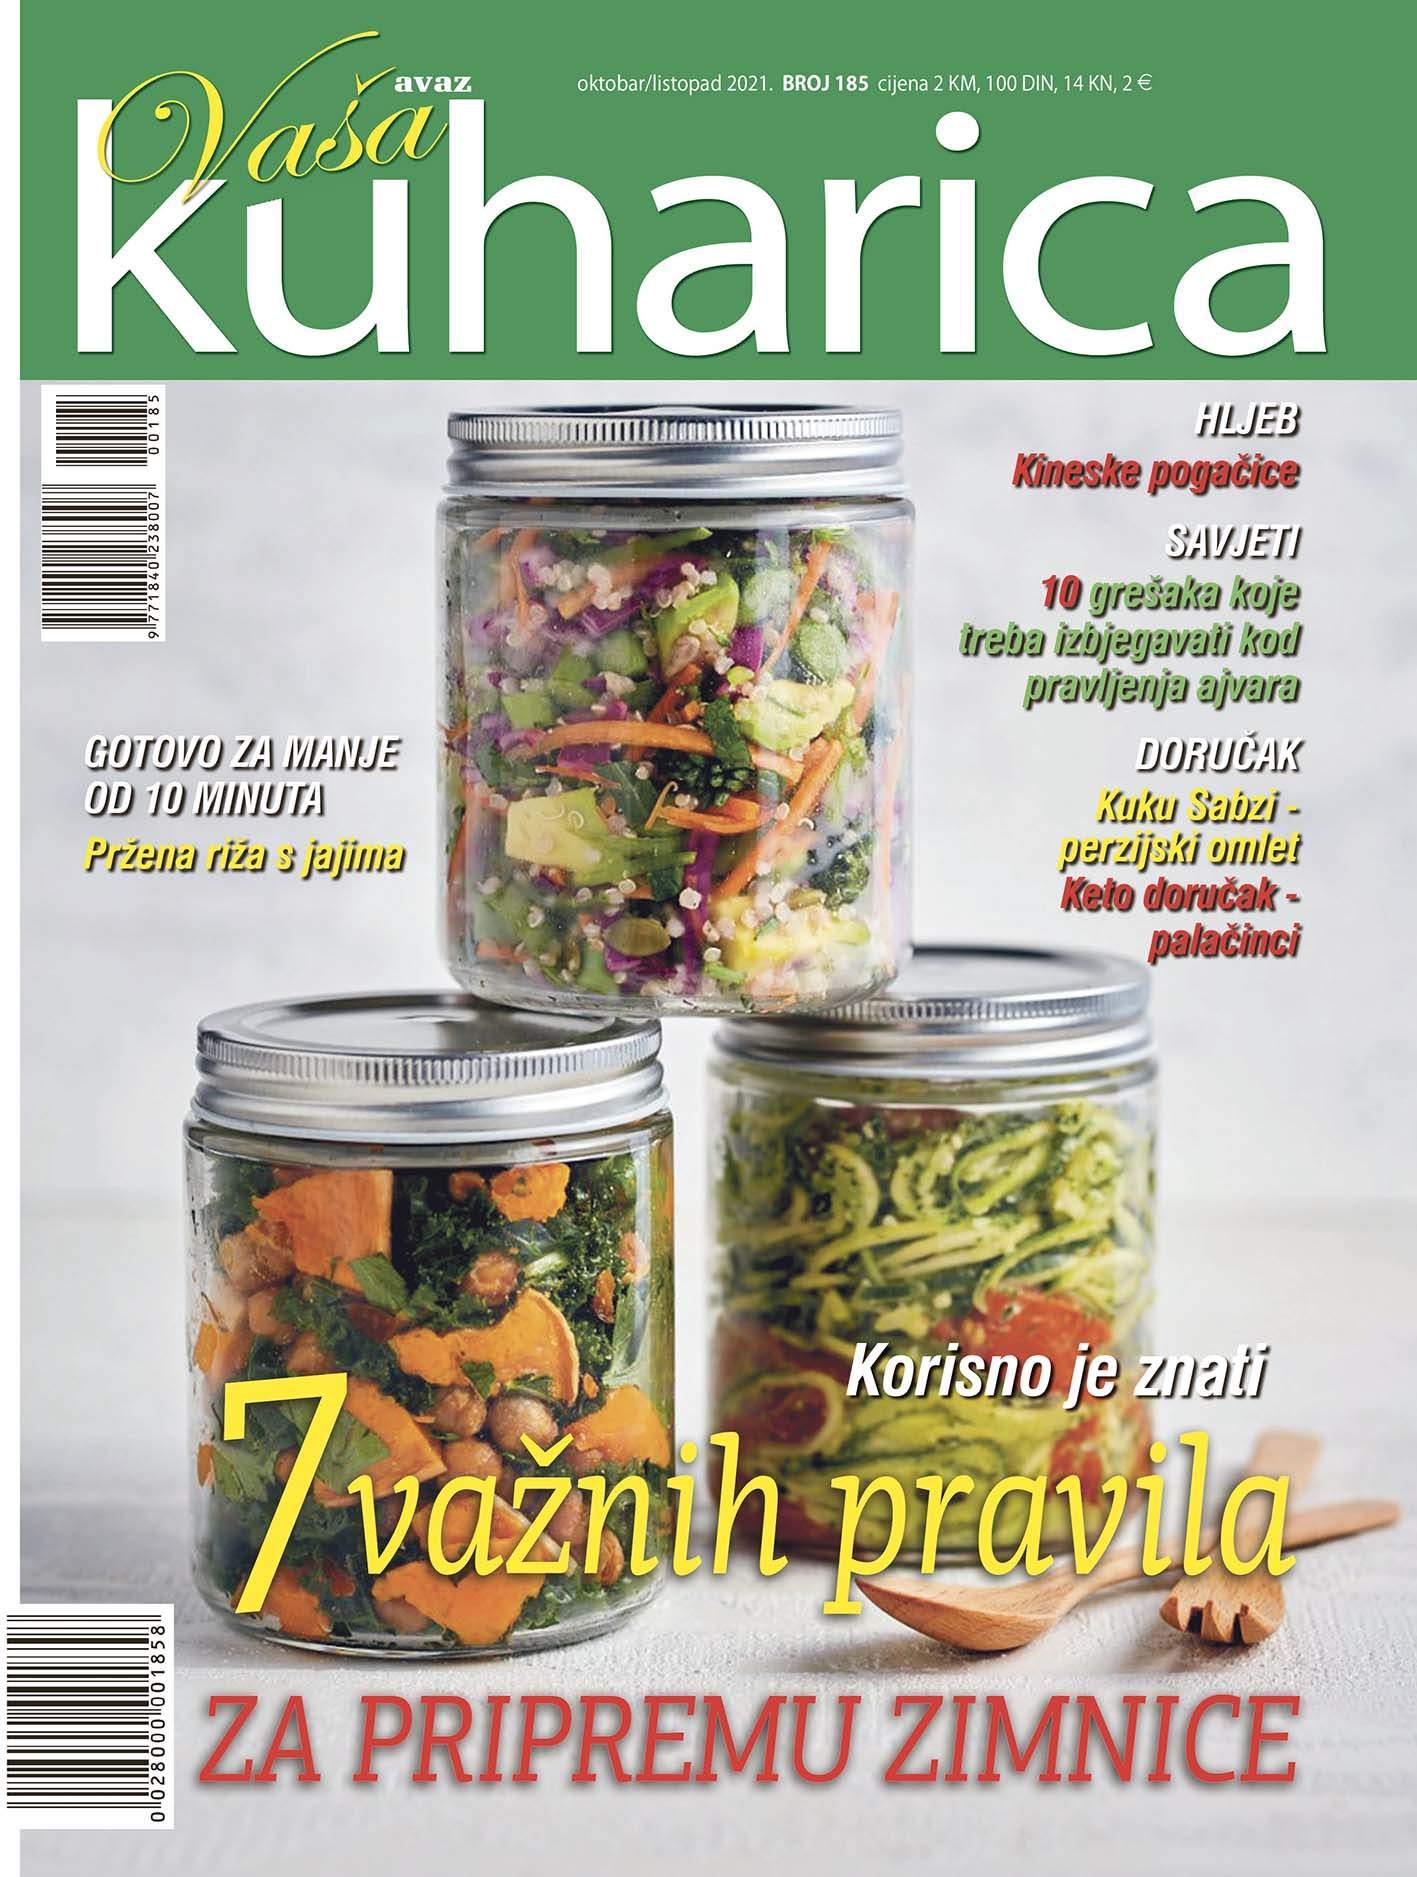 Naslovnica časopisa "Kuharica" - Avaz